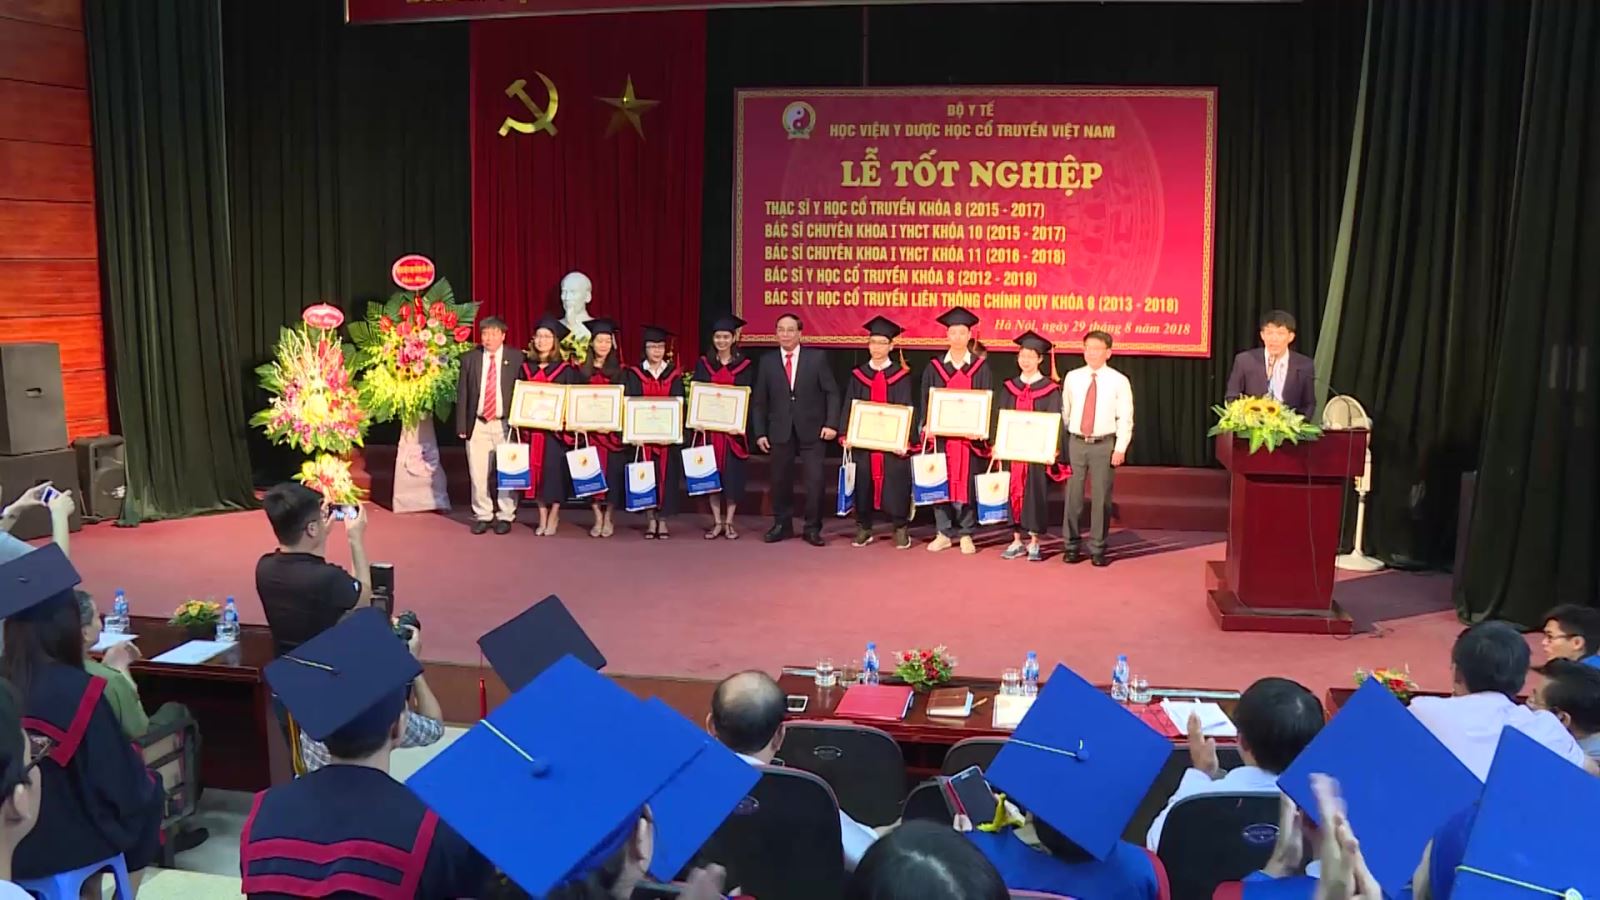 Lễ tốt nghiệp Học viện Y Dược học cổ truyền Việt Nam